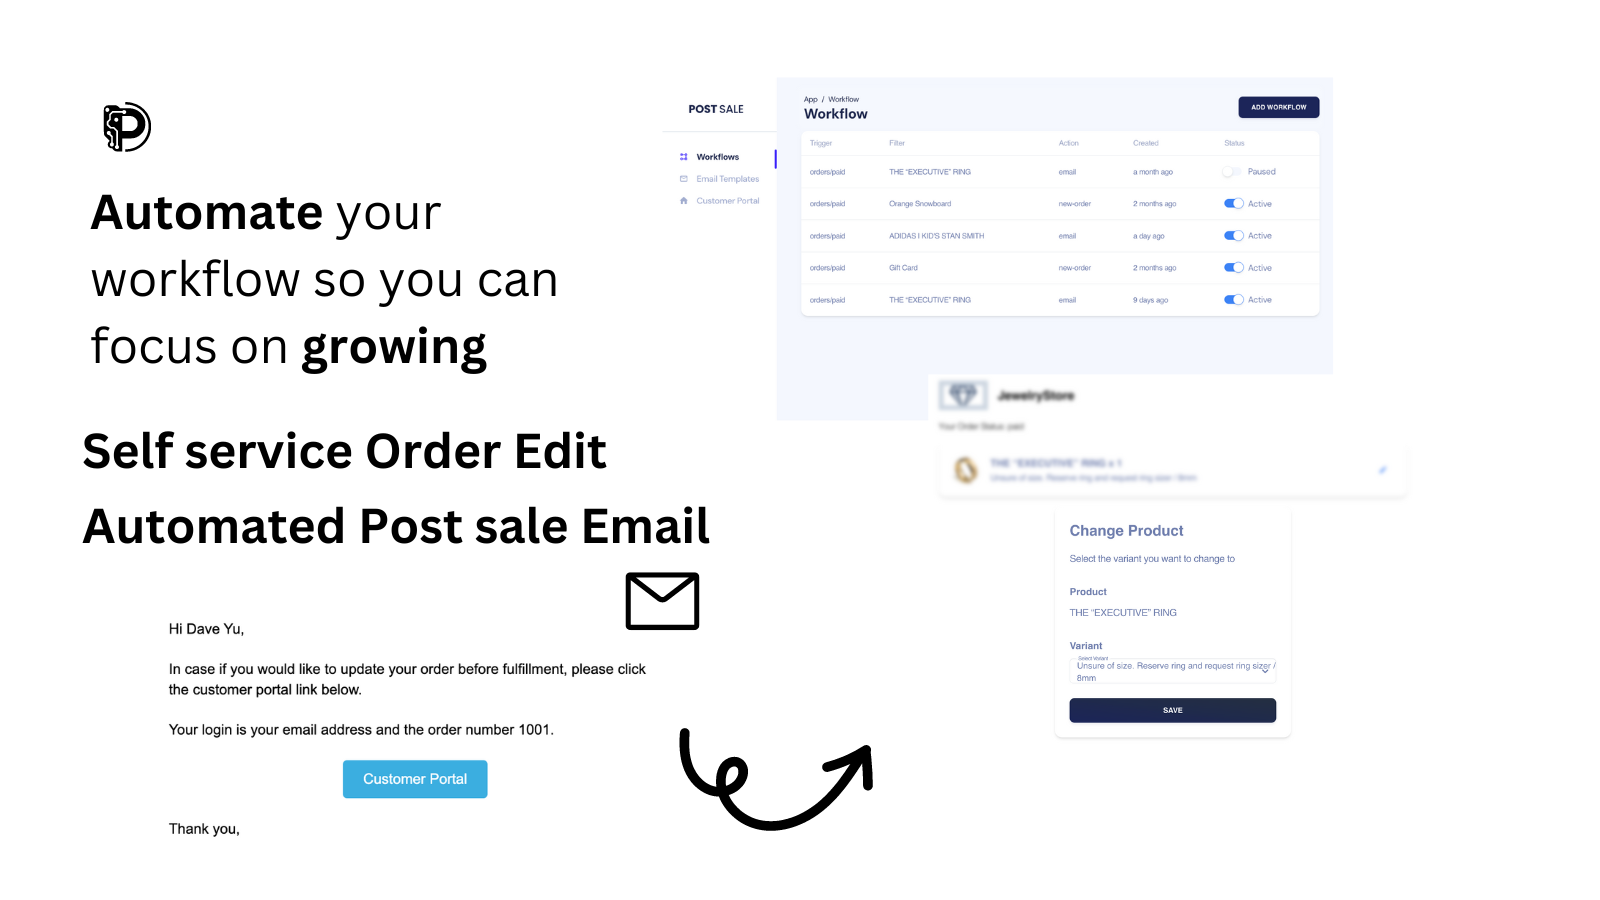 correo electrónico automatizado post venta para la edición de pedidos del cliente